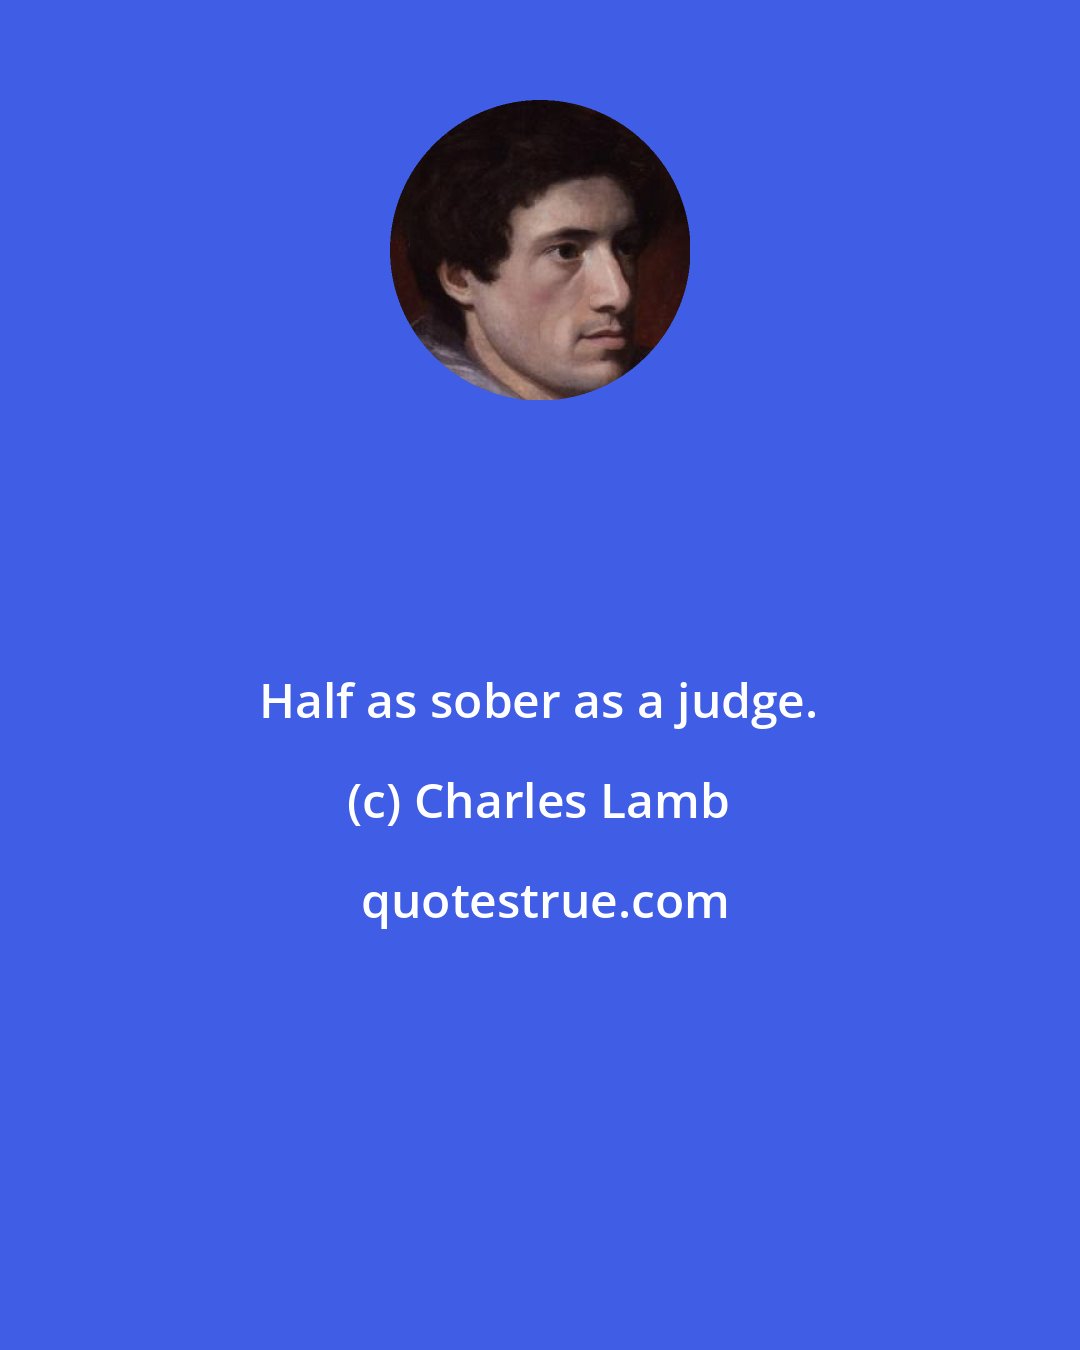 Charles Lamb: Half as sober as a judge.